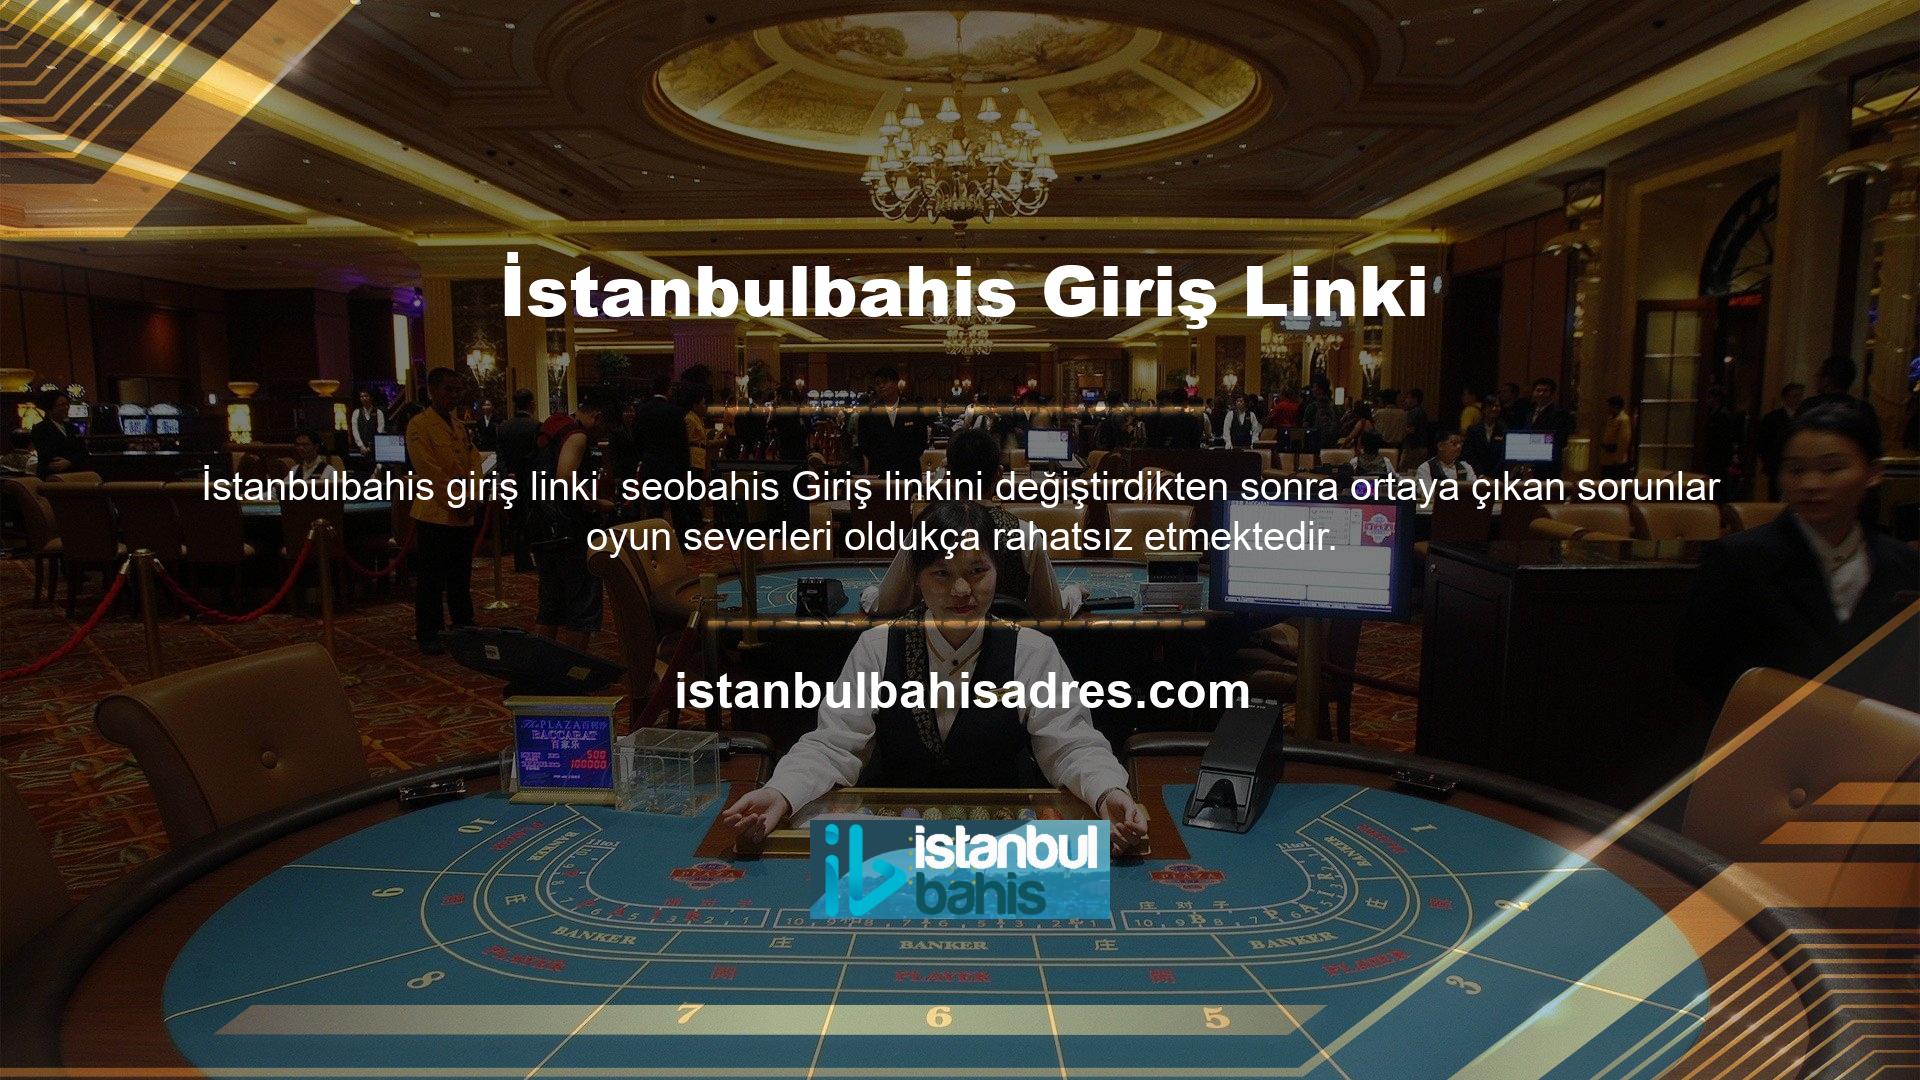 Canlı bahis sitesi, kademeli bahis yapısı, farklı tasarımları ve cömert bonusları ile Türkiye'nin en iyileri arasında yer almaktadır